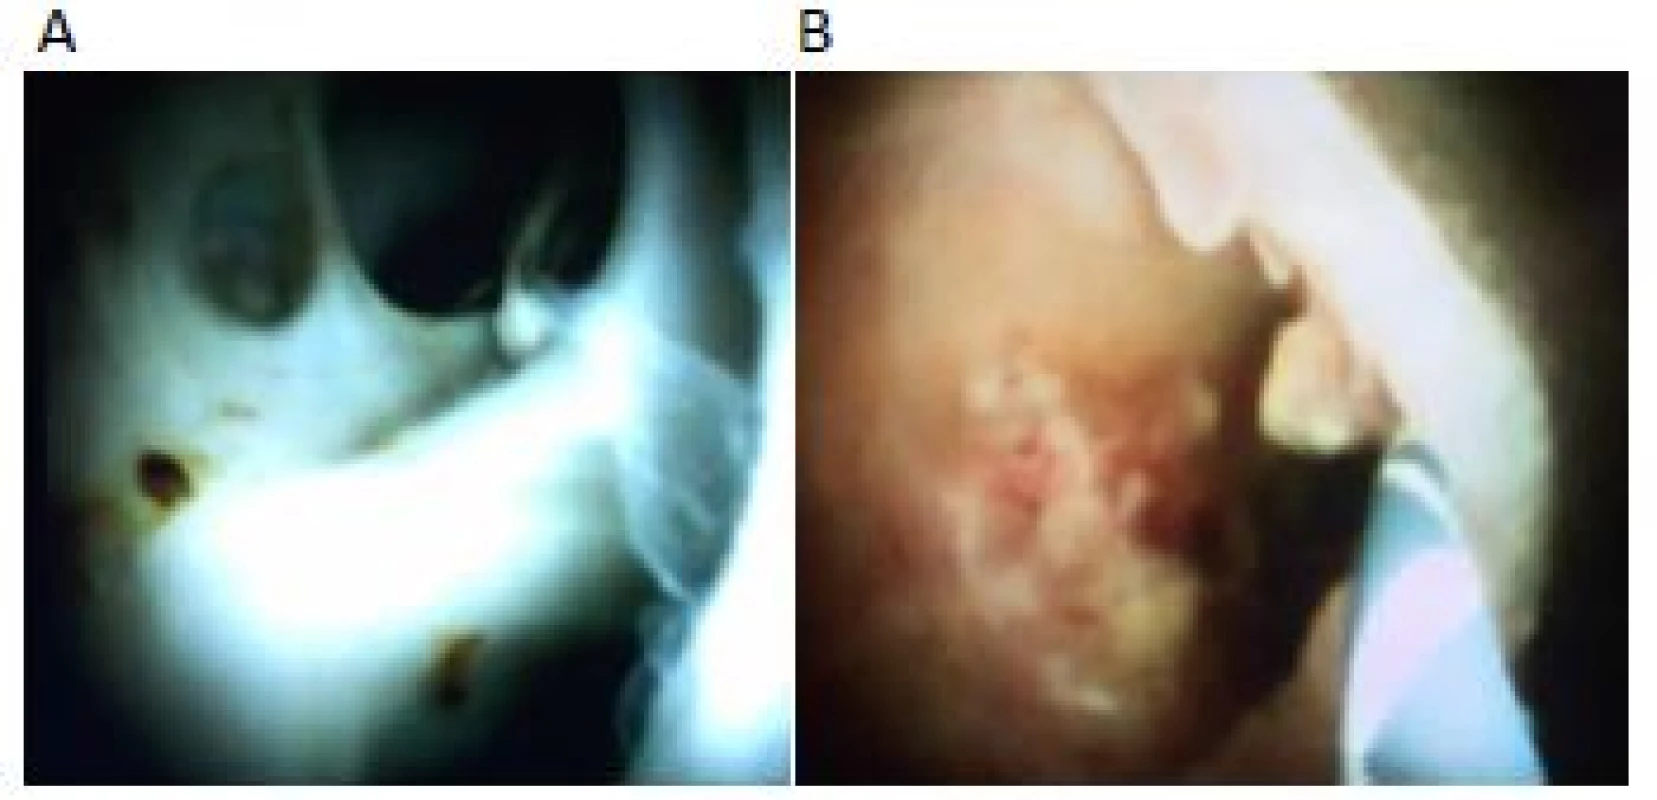 Normální cholangioskopický nález:
A – normální nález; B – adeherující koagulum a nekróza po
předchozí stentáži